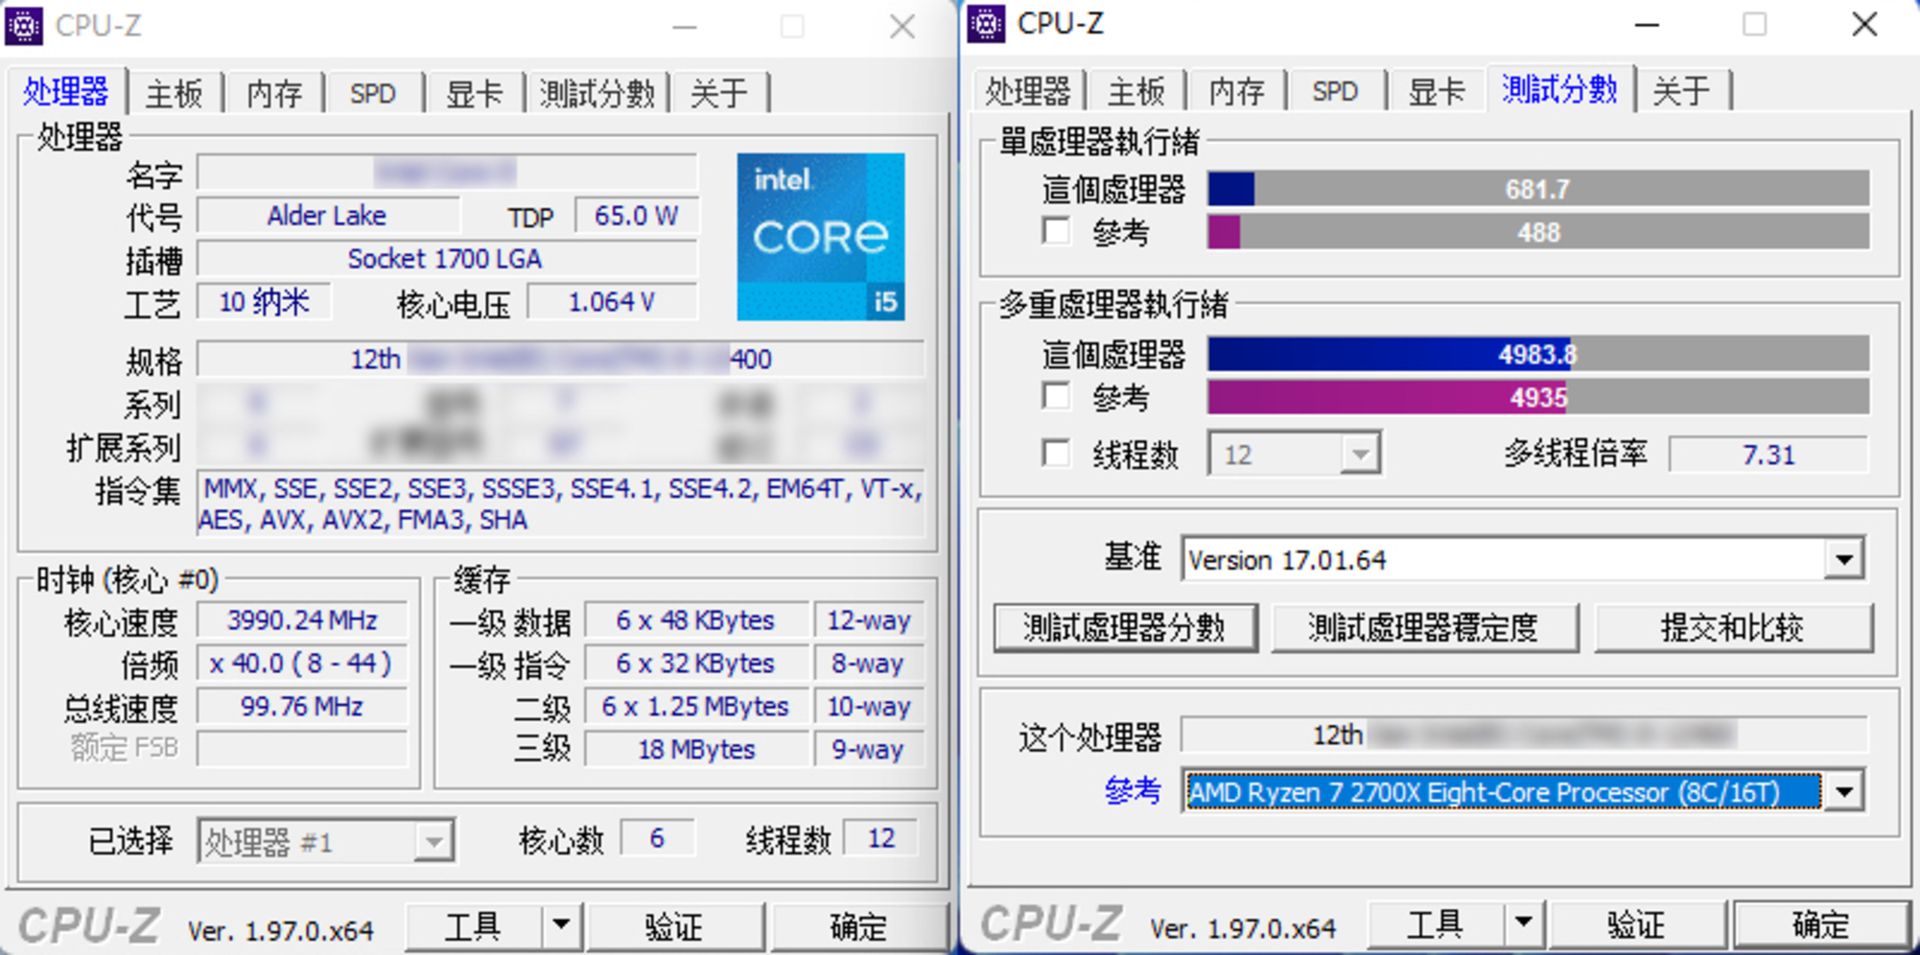 نتیجه بنچمارک CPU-Z